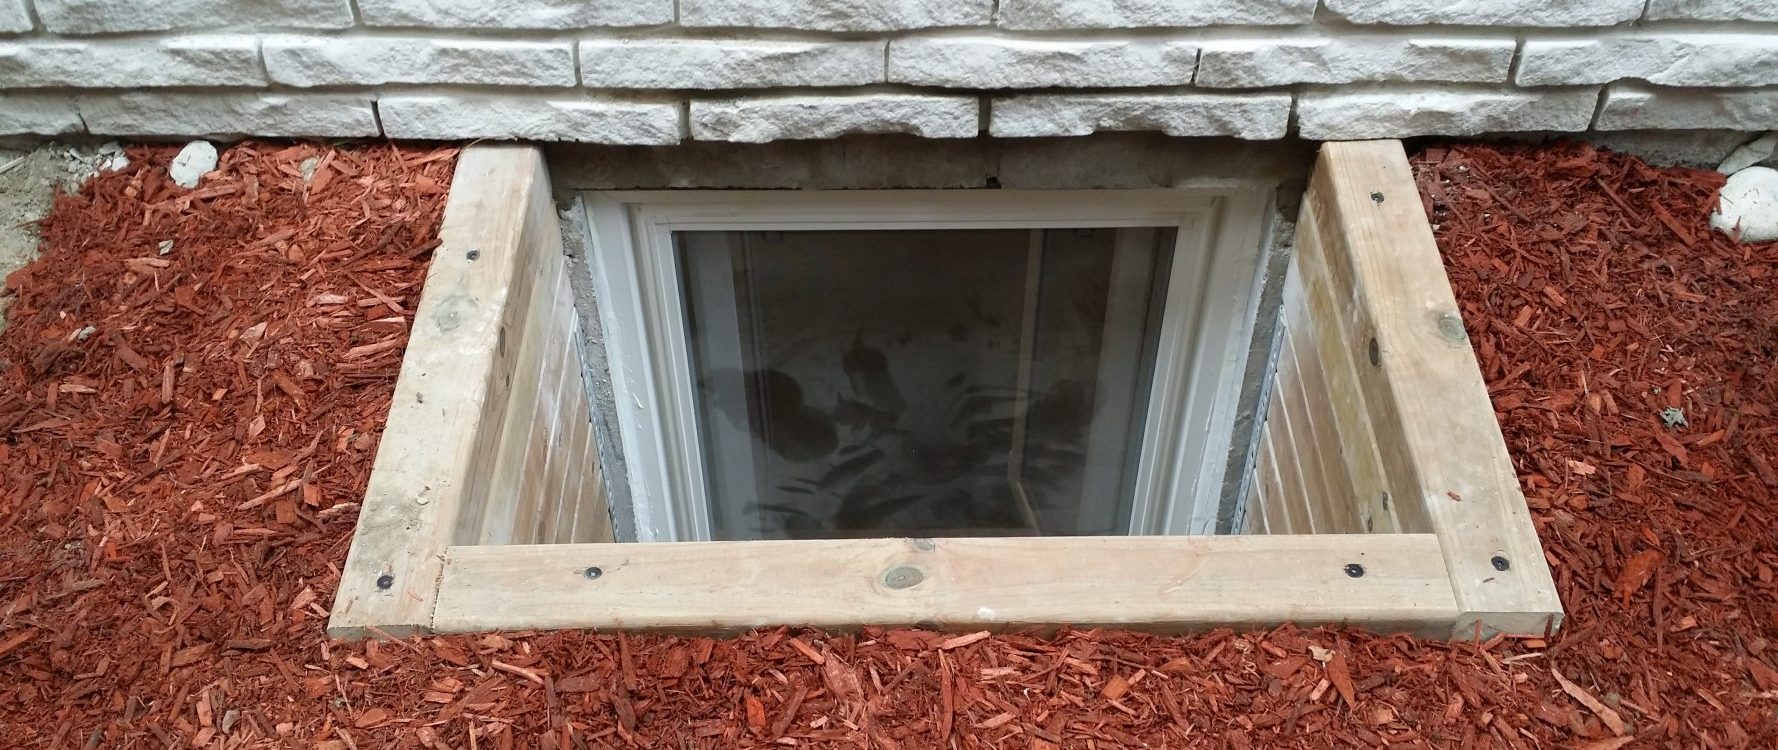 egress window installation clayson construction durham